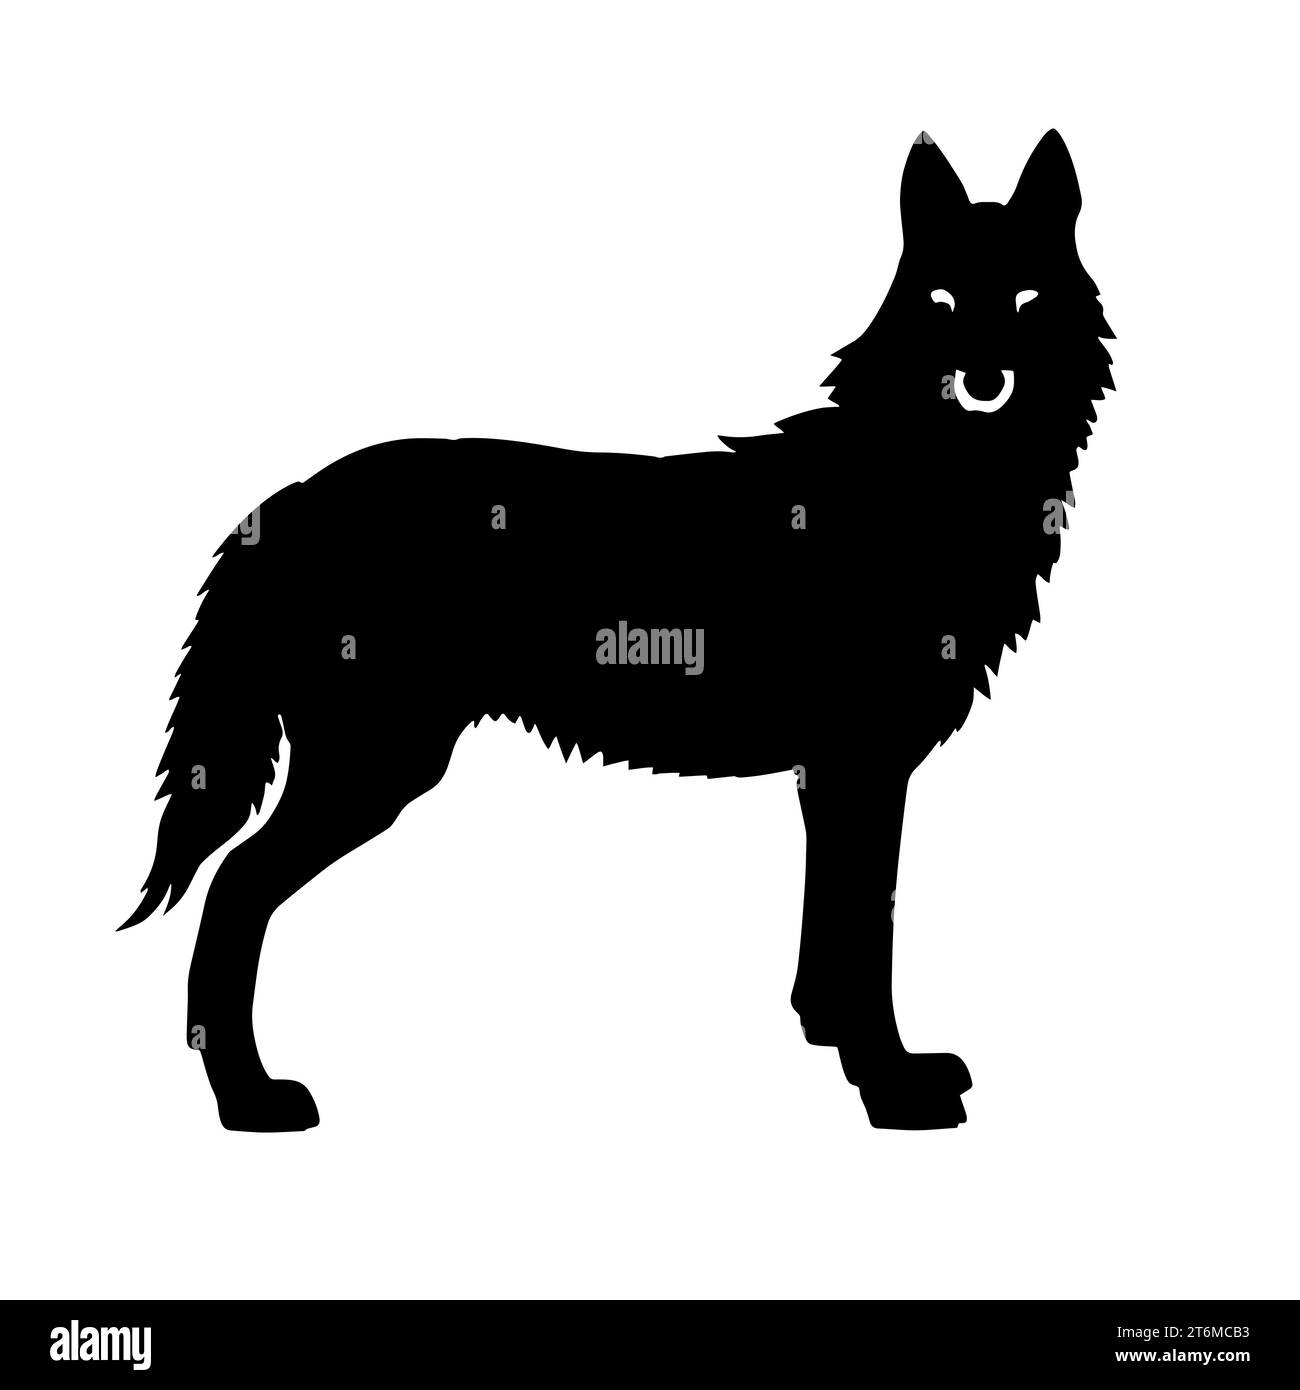 Schwarz-weiß-Illustration eines Wolfes mit dickem Pelzfell und scharfen Zähnen. Der Wolf repräsentiert das Rudel, starke Familienbande und Kooperation Stockfoto